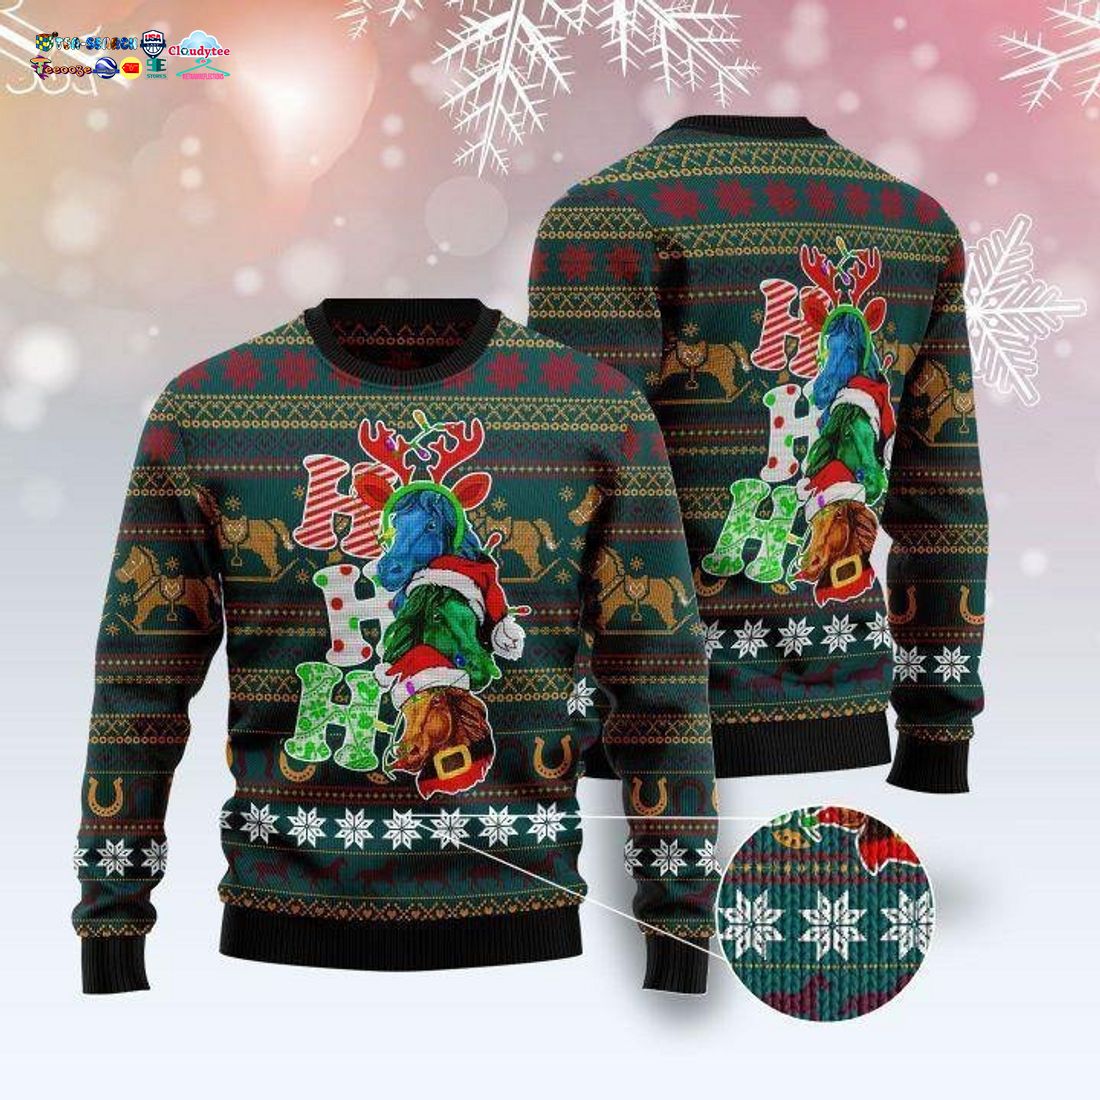 Horse Ho Ho Ho Ugly Christmas Sweater